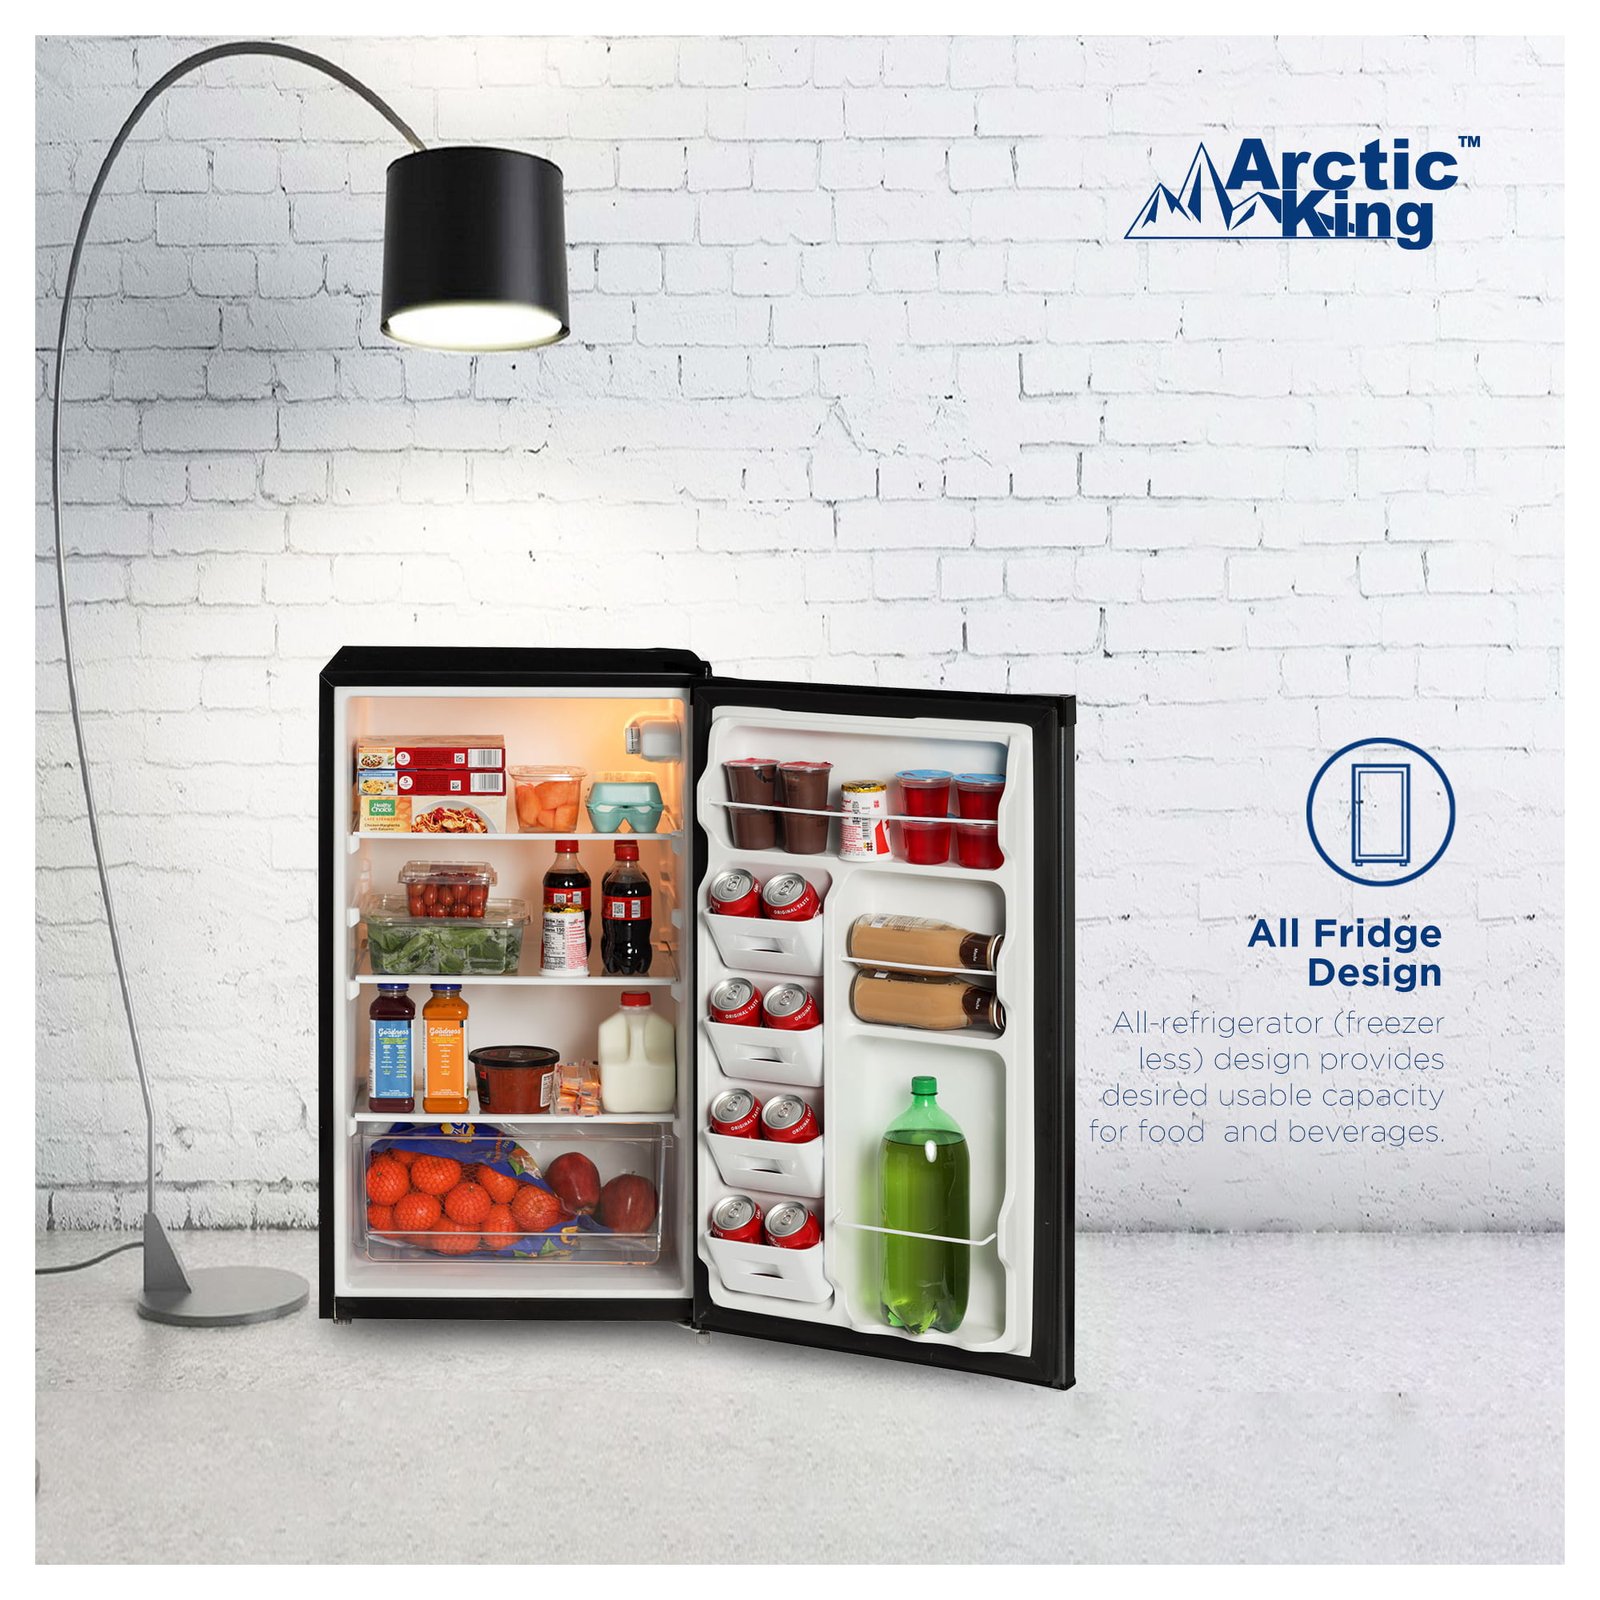 Arctic King 4.4 Cu ft One-Door No Freezer Mini Fridge, Black